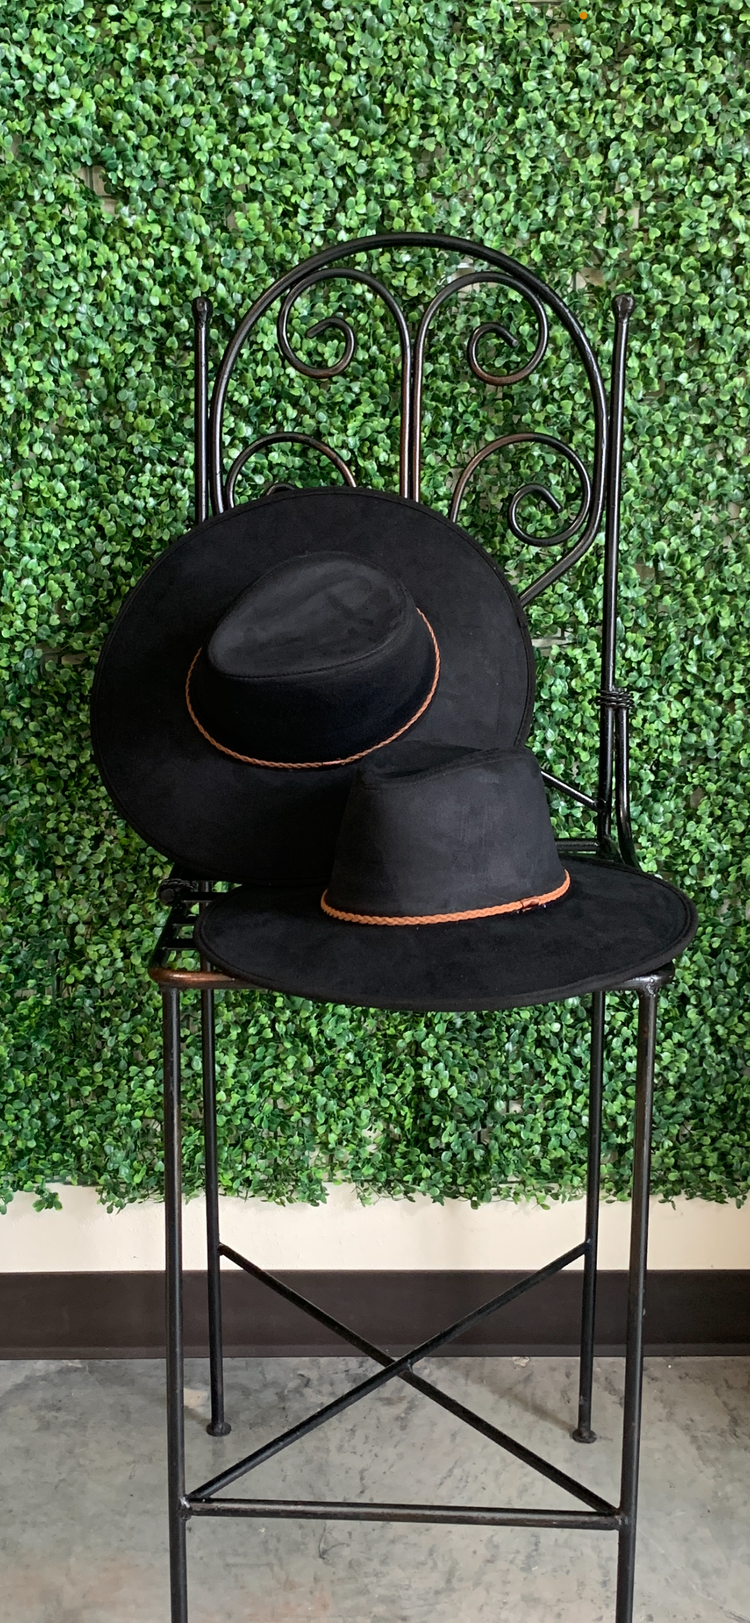 Wild Black Wide Brim Fedora Hat